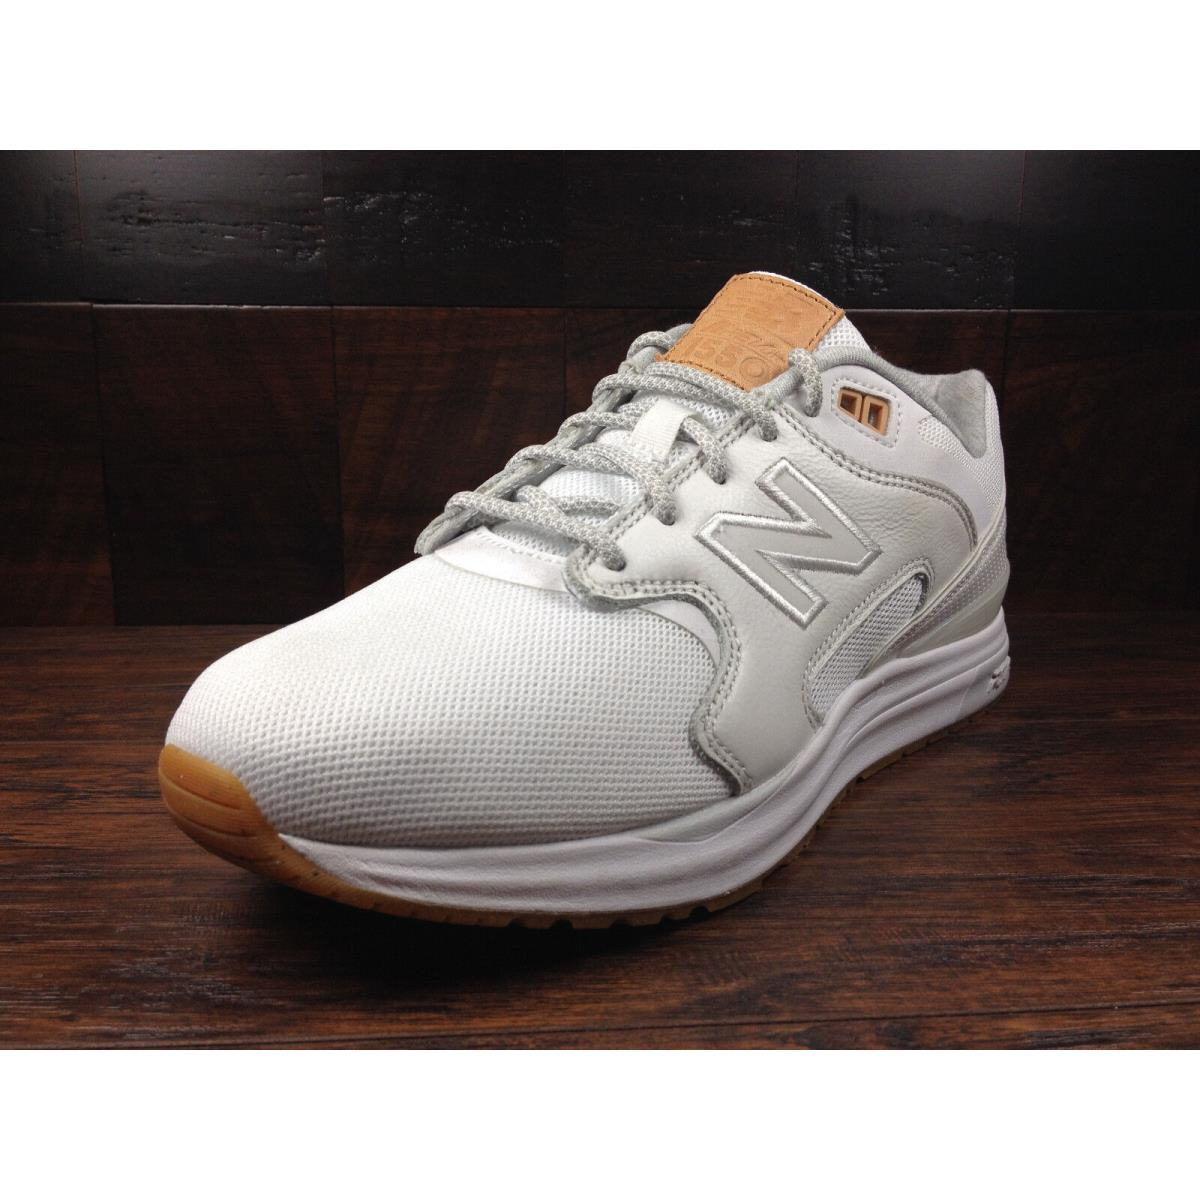 New Balance shoes  - White / Tan 0